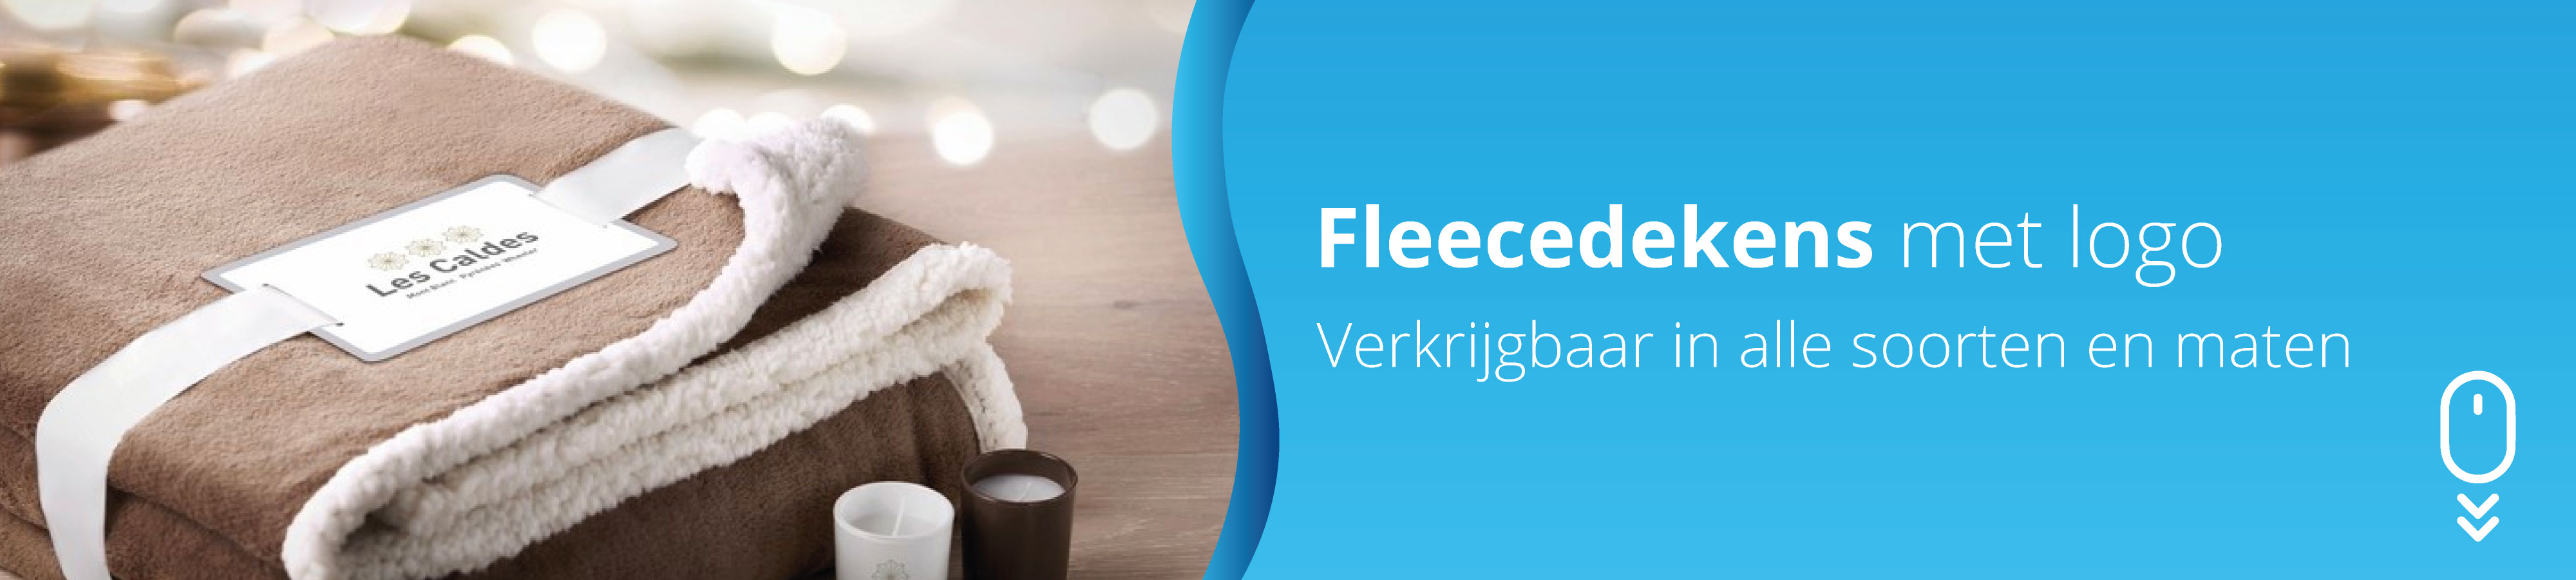 Fleecedekens-bedrukken-Fleecedekens-met-logo